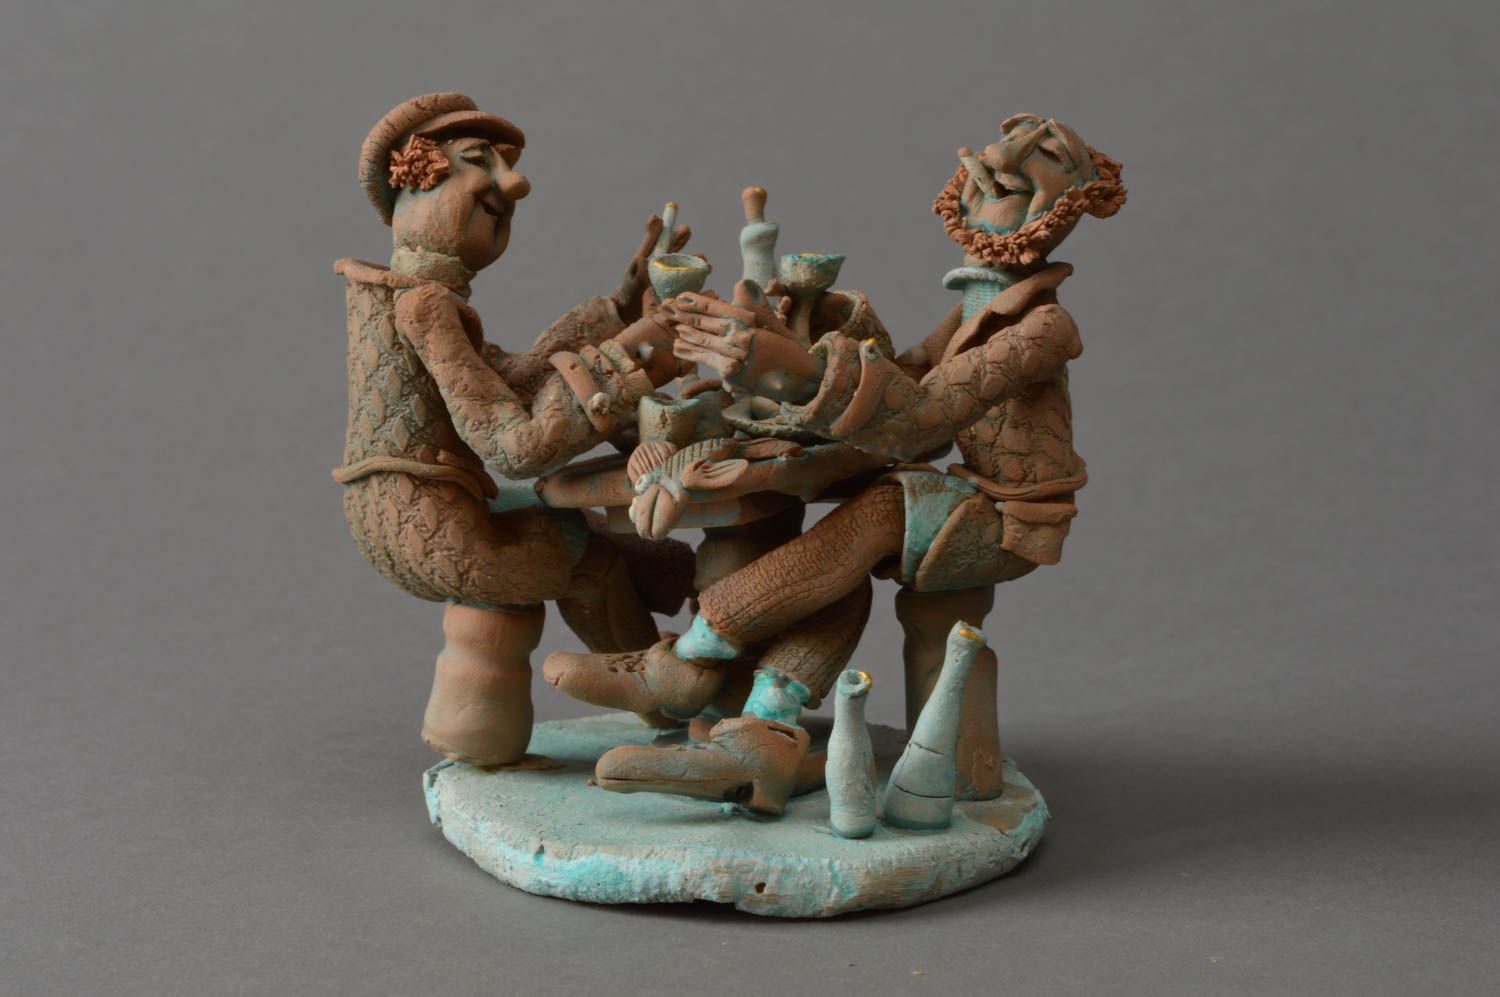 Красивая глиняная статуэтка забавная миниатюра ручной работы Встреча друзей фото 1